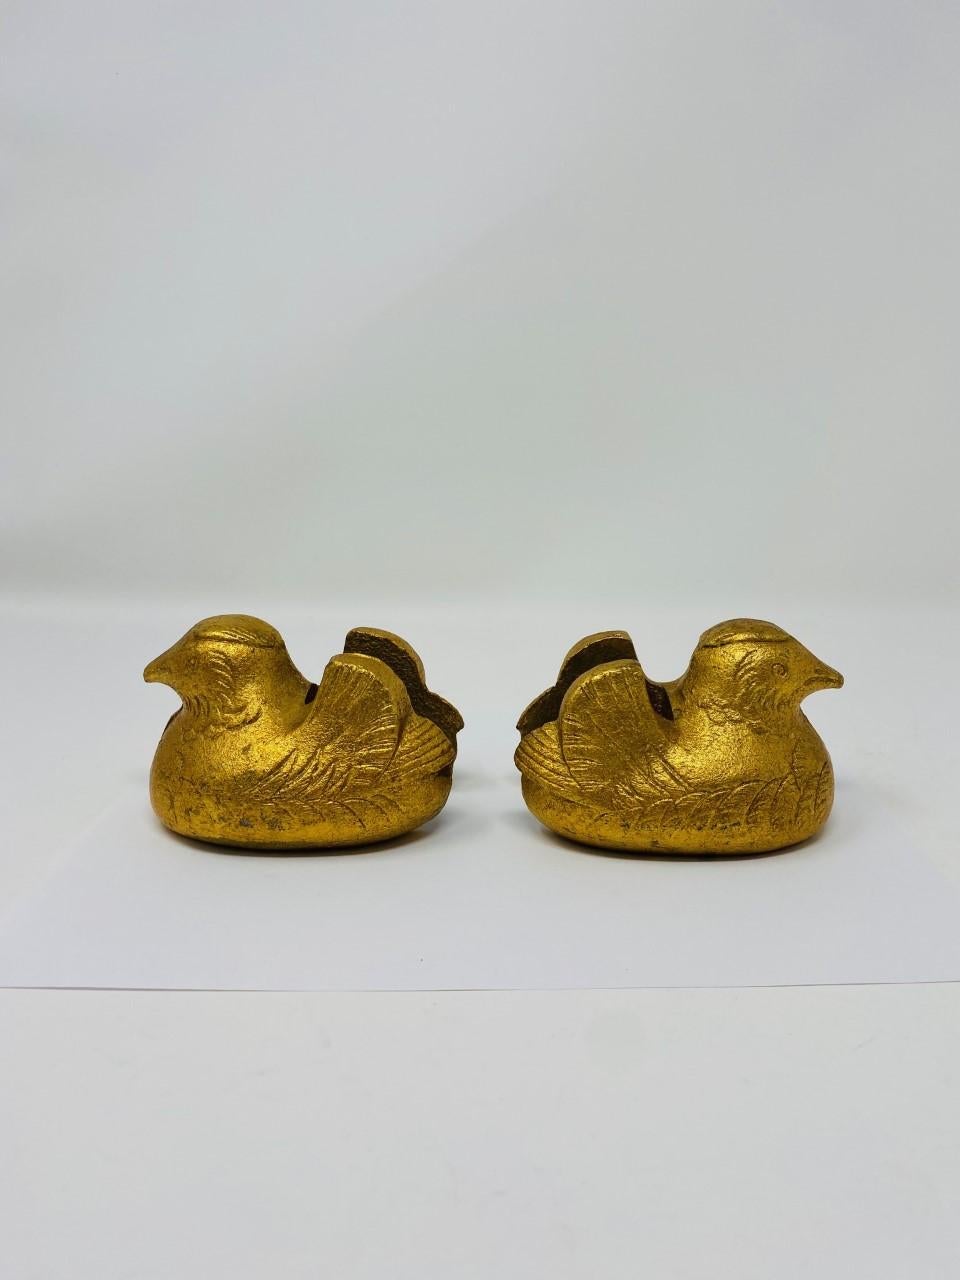 Incroyable paire de porte-paravents en bronze doré japonais moulé à la main, avec plumage détaillé, période Taisho 1920. Chacune de ces deux sculptures est en excellent état avec une finition dorée presque intacte. De magnifiques œuvres d'art qui